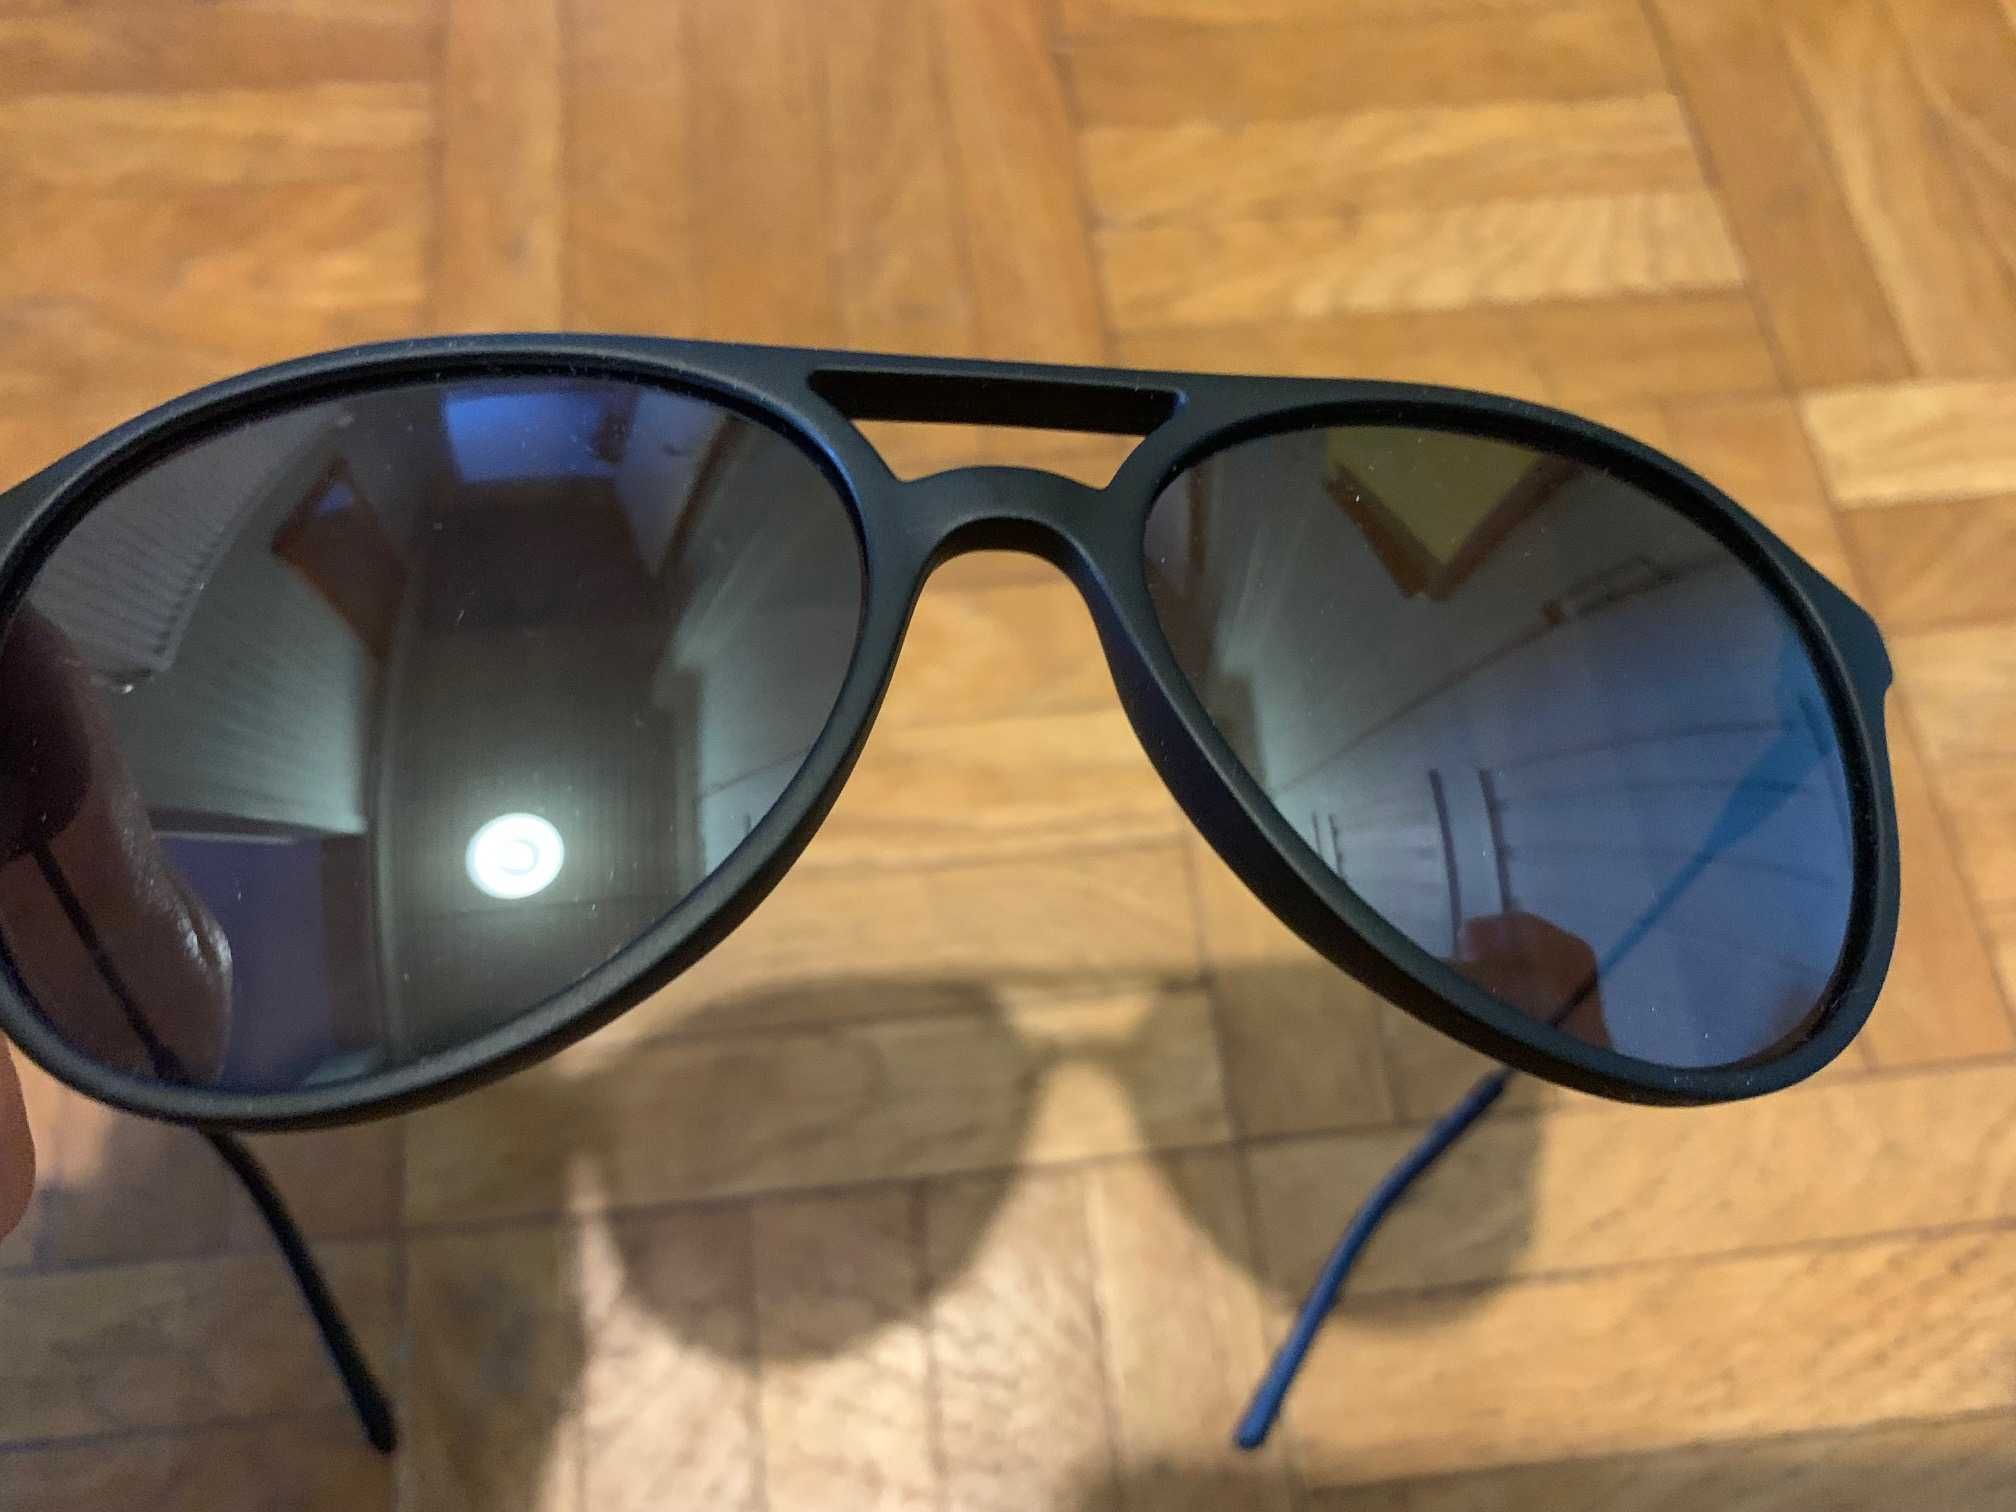 Calvin Klein nowe okulary przeciwsłoneczne model CK20702S